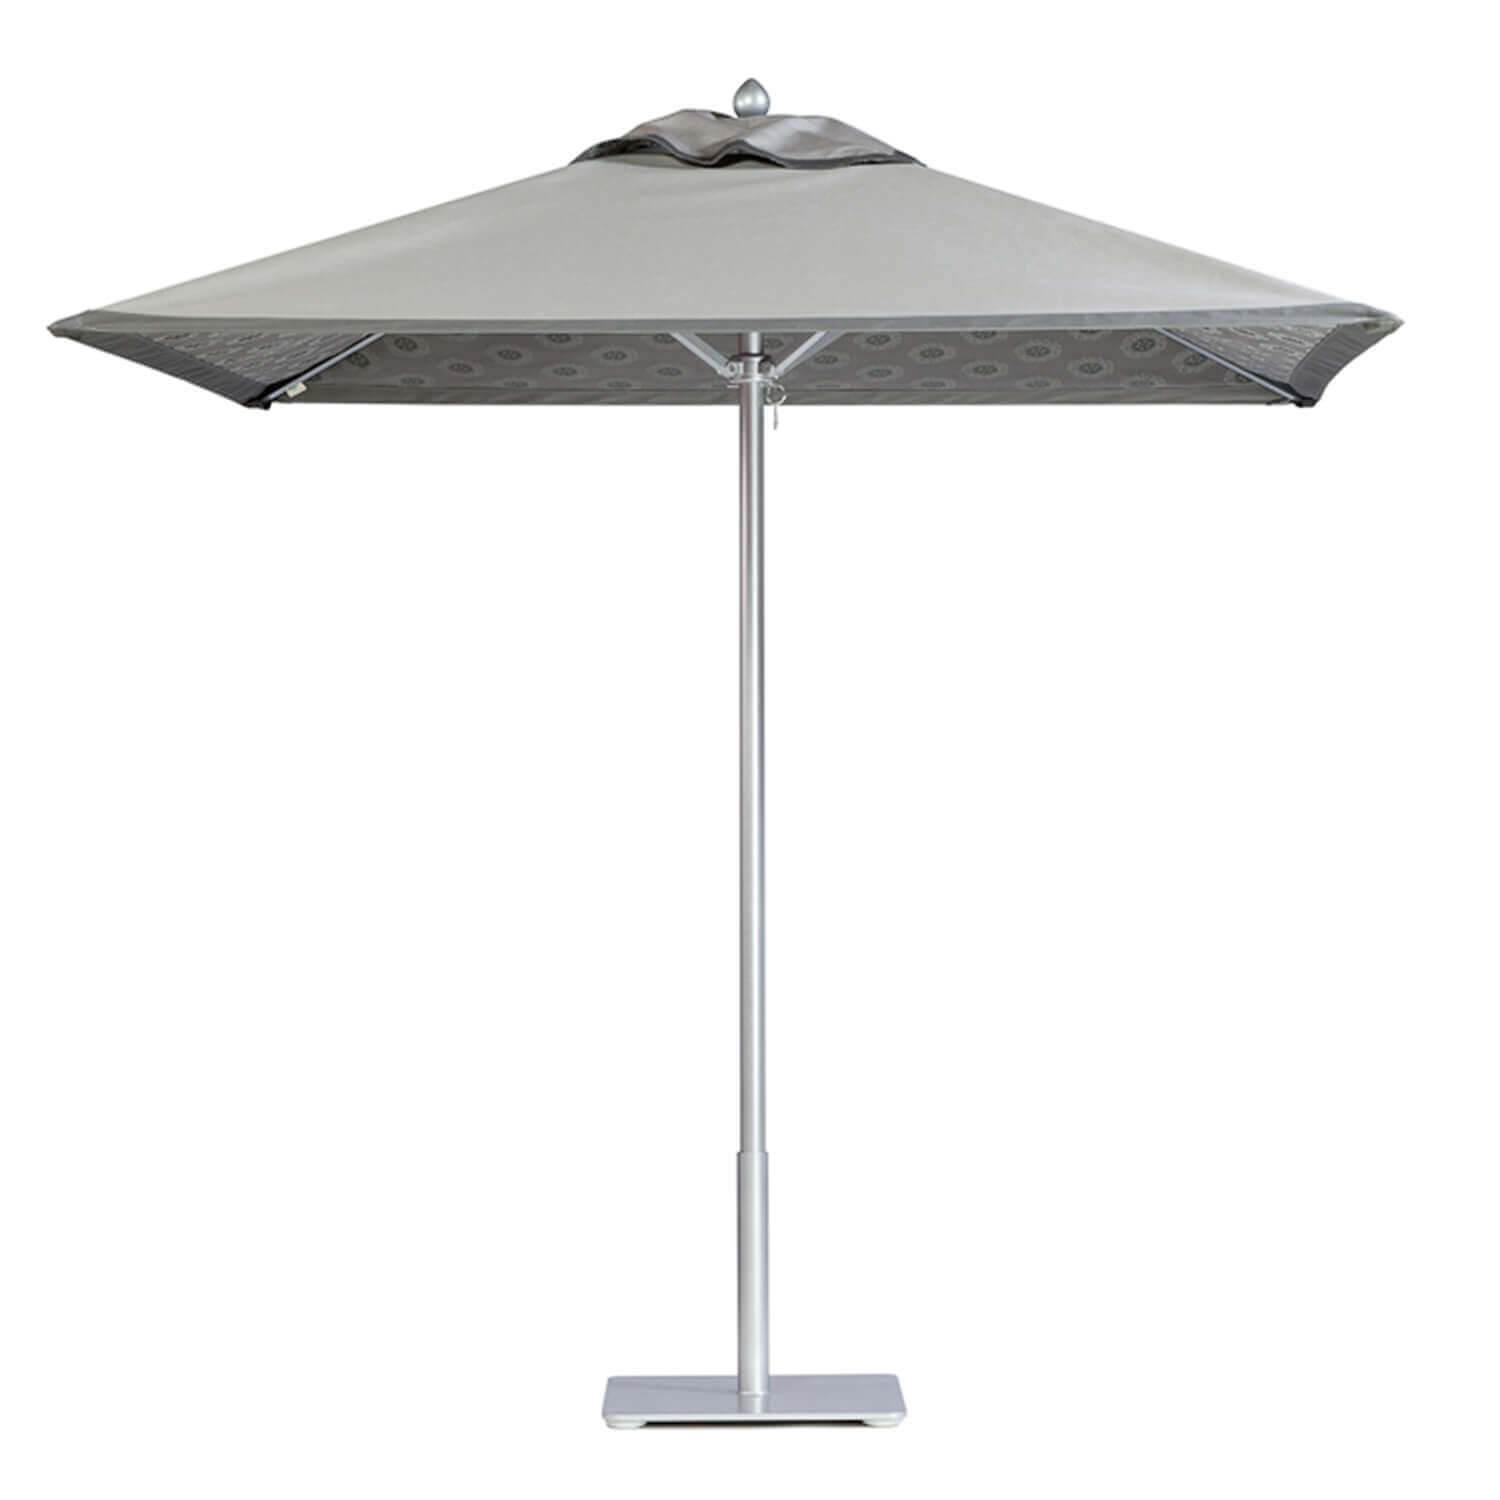 Cadet Grey Umbrella Image